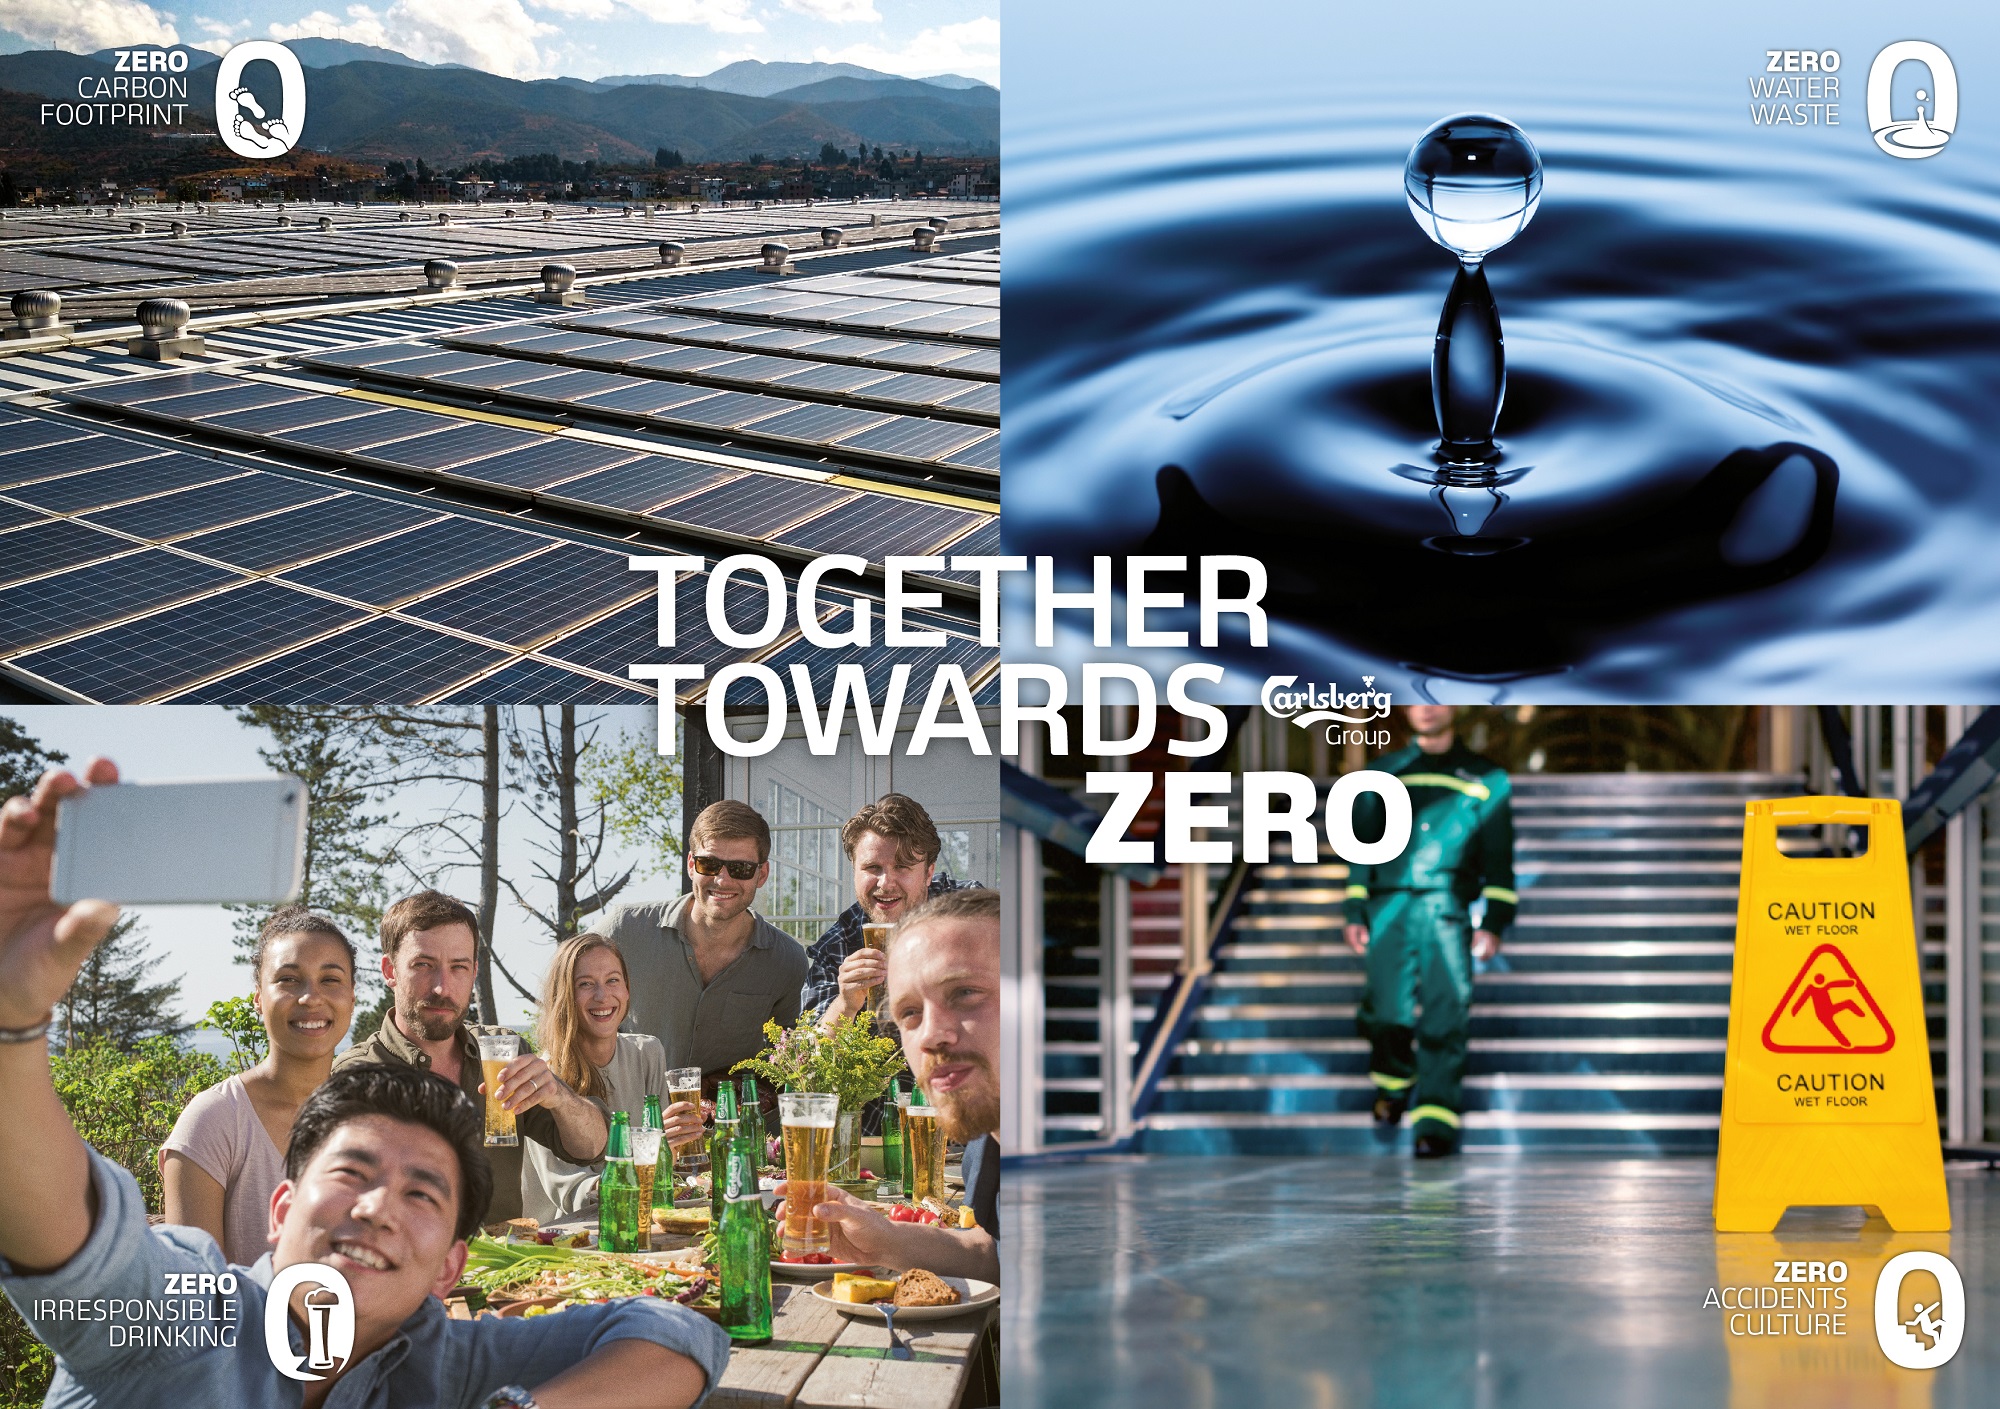 Zero emisji dwutlenku węgla  i o połowę mniejsze zużycie wody w browarach – nowe cele zrównoważonego rozwoju  Grupy Carlsberg do 2030 r.